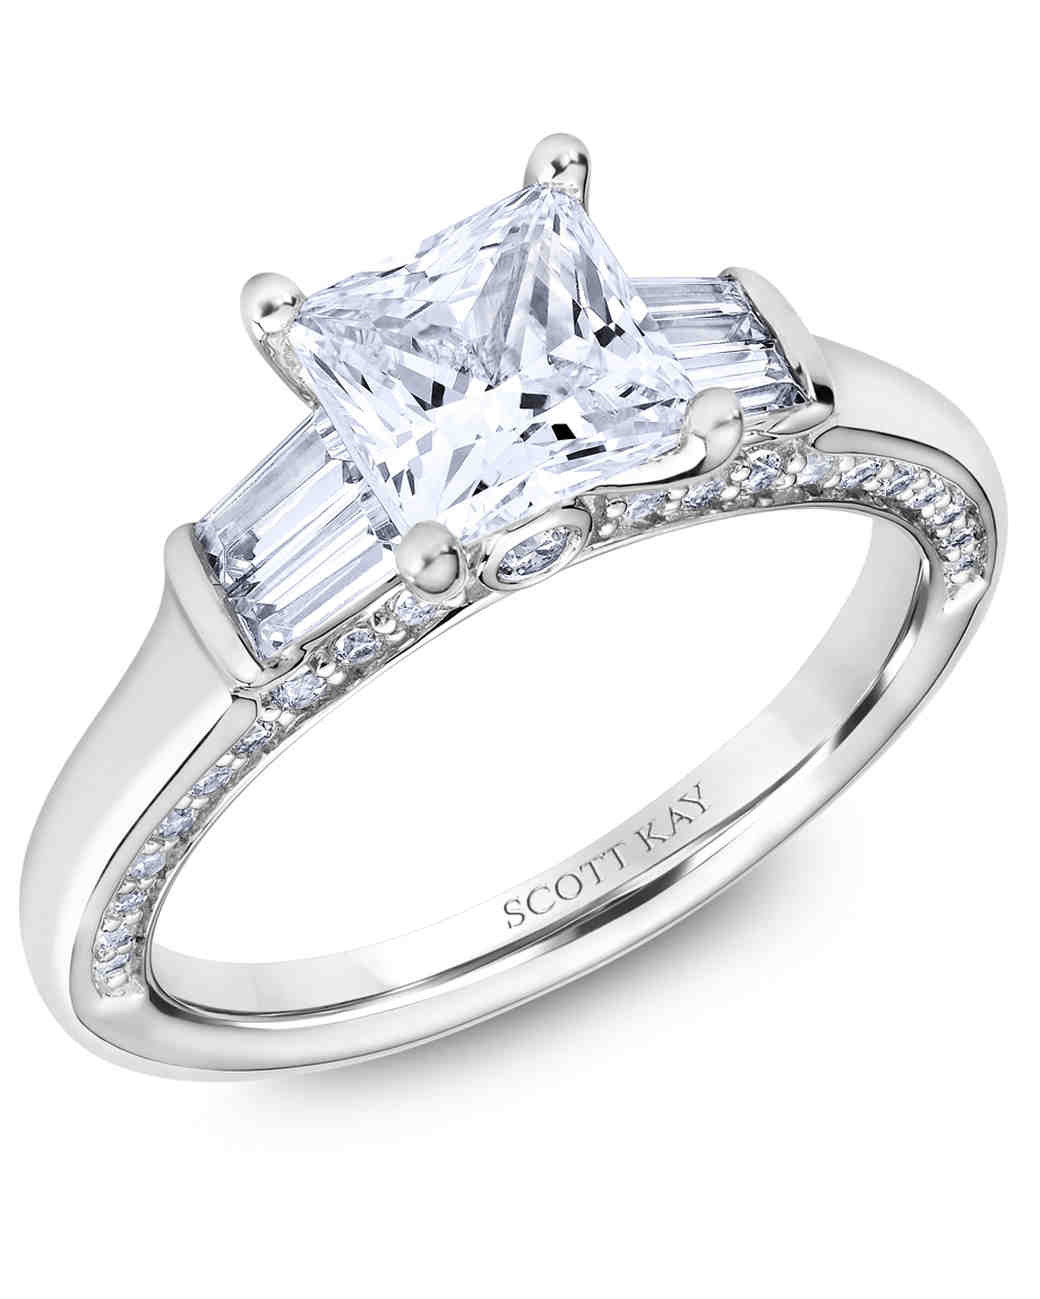 Princess Cut Rings
 30 Princess Cut Diamond Engagement Rings We Love